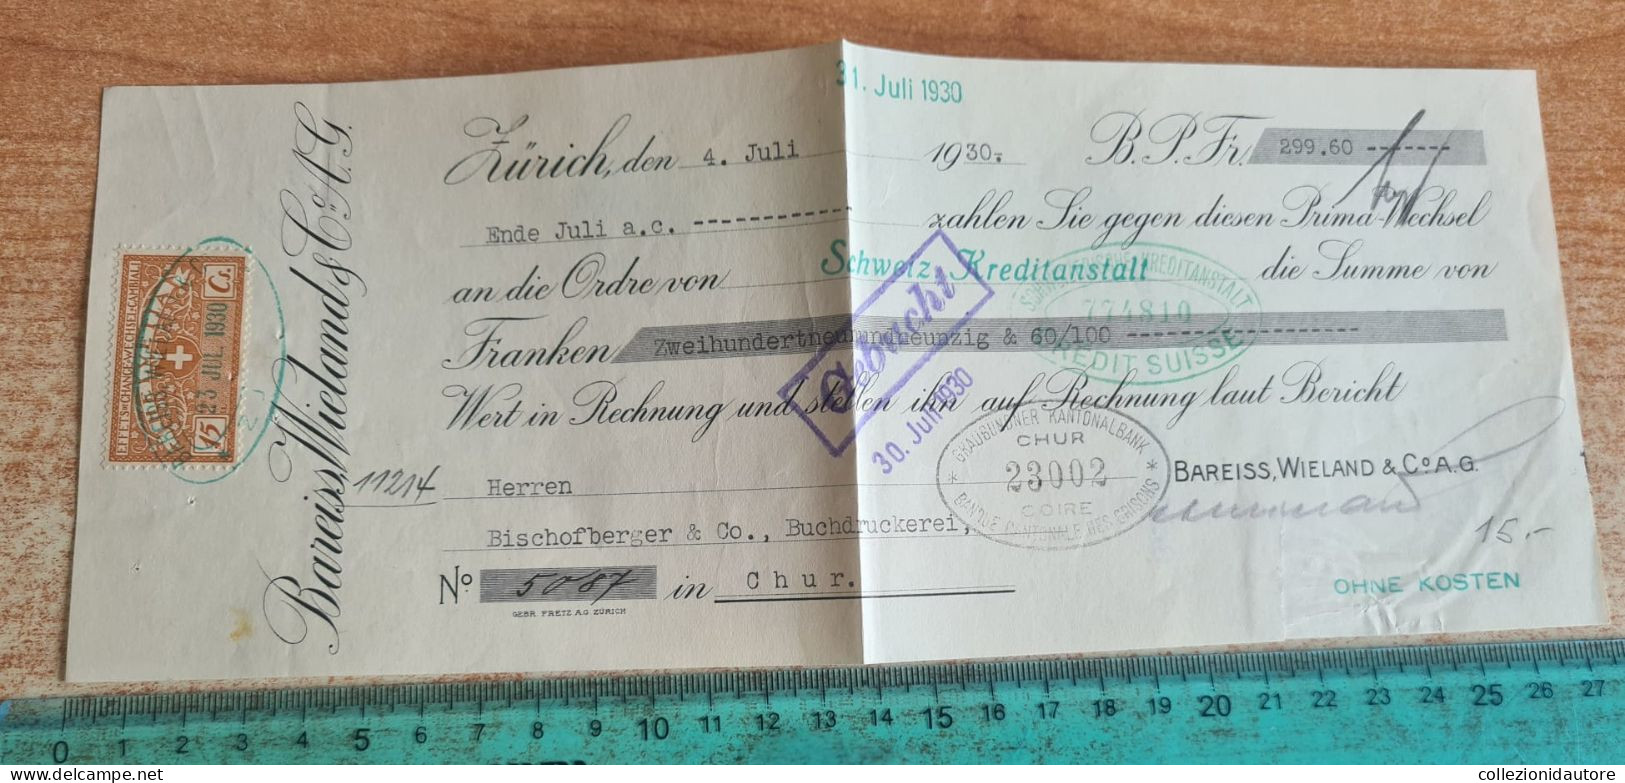 SWITZERLAND - INKASSO - CAMBIALE DEL 4.7.1930 DI 299,60 MARK - ZÜRICH - CHUR - Bills Of Exchange